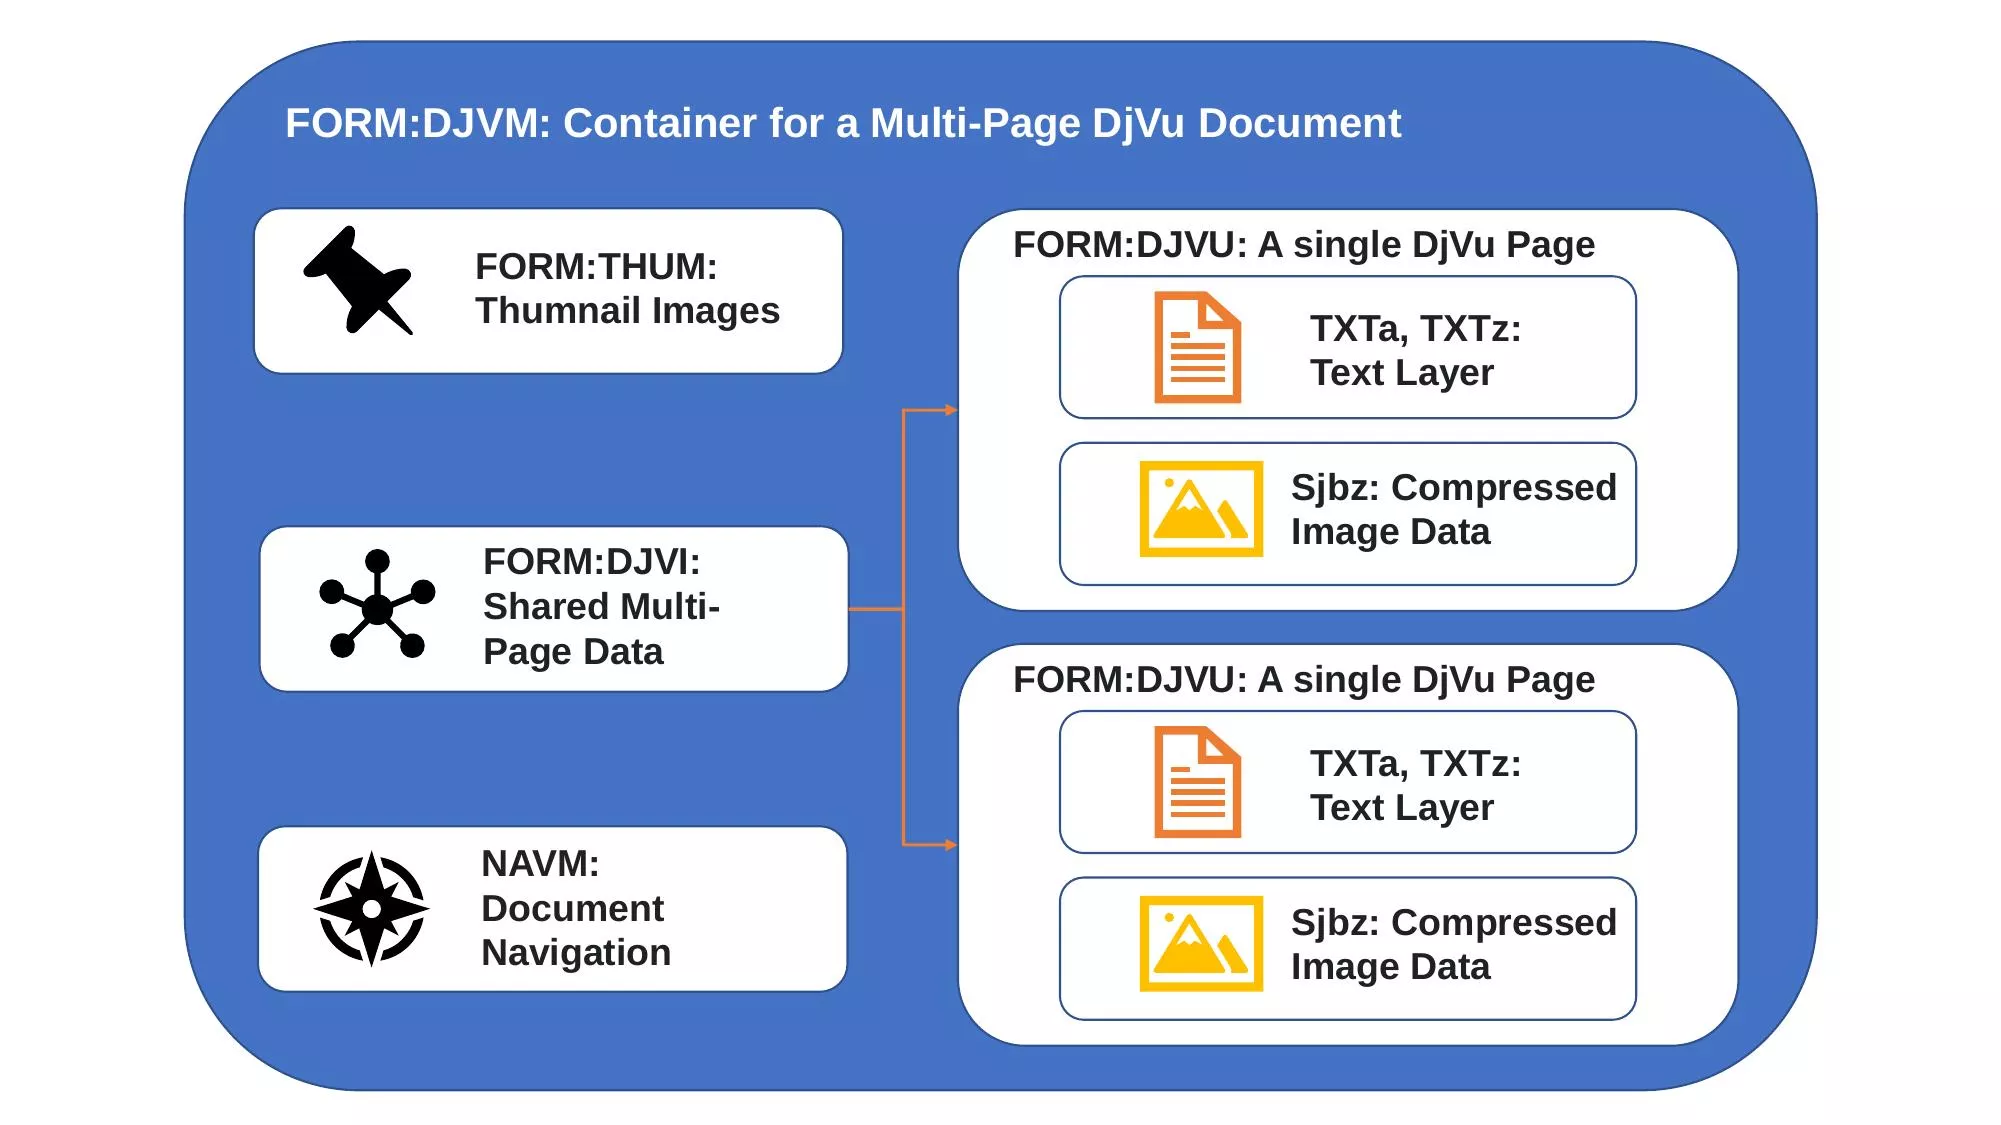 The internal structure of a DjVu document